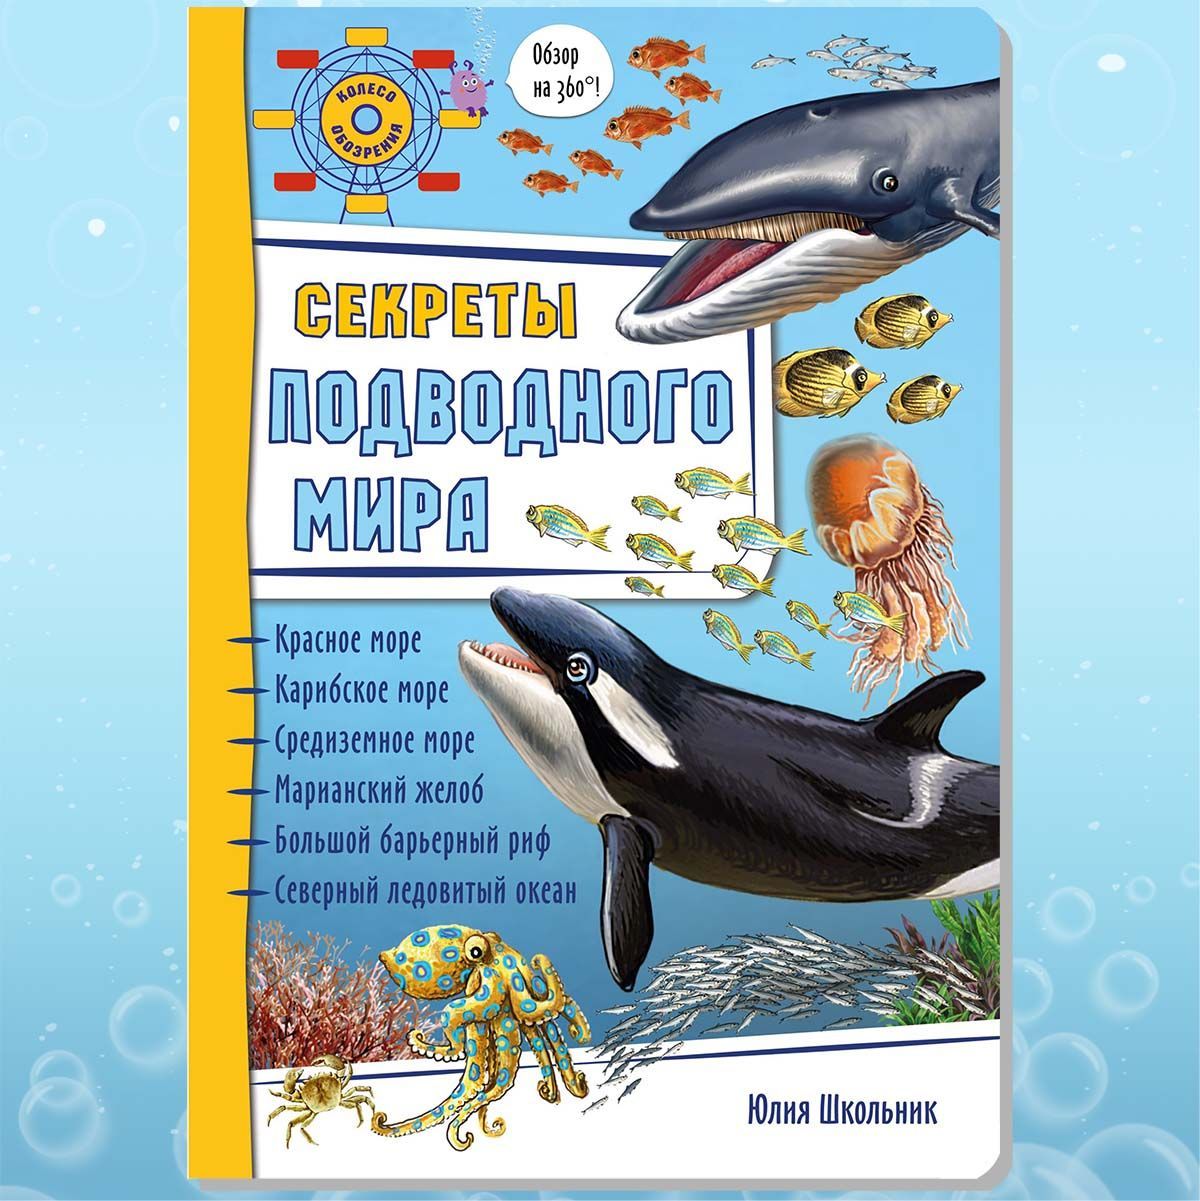 Подводный мир для детей, купить энциклопедии о подводном мире — tdksovremennik.ru